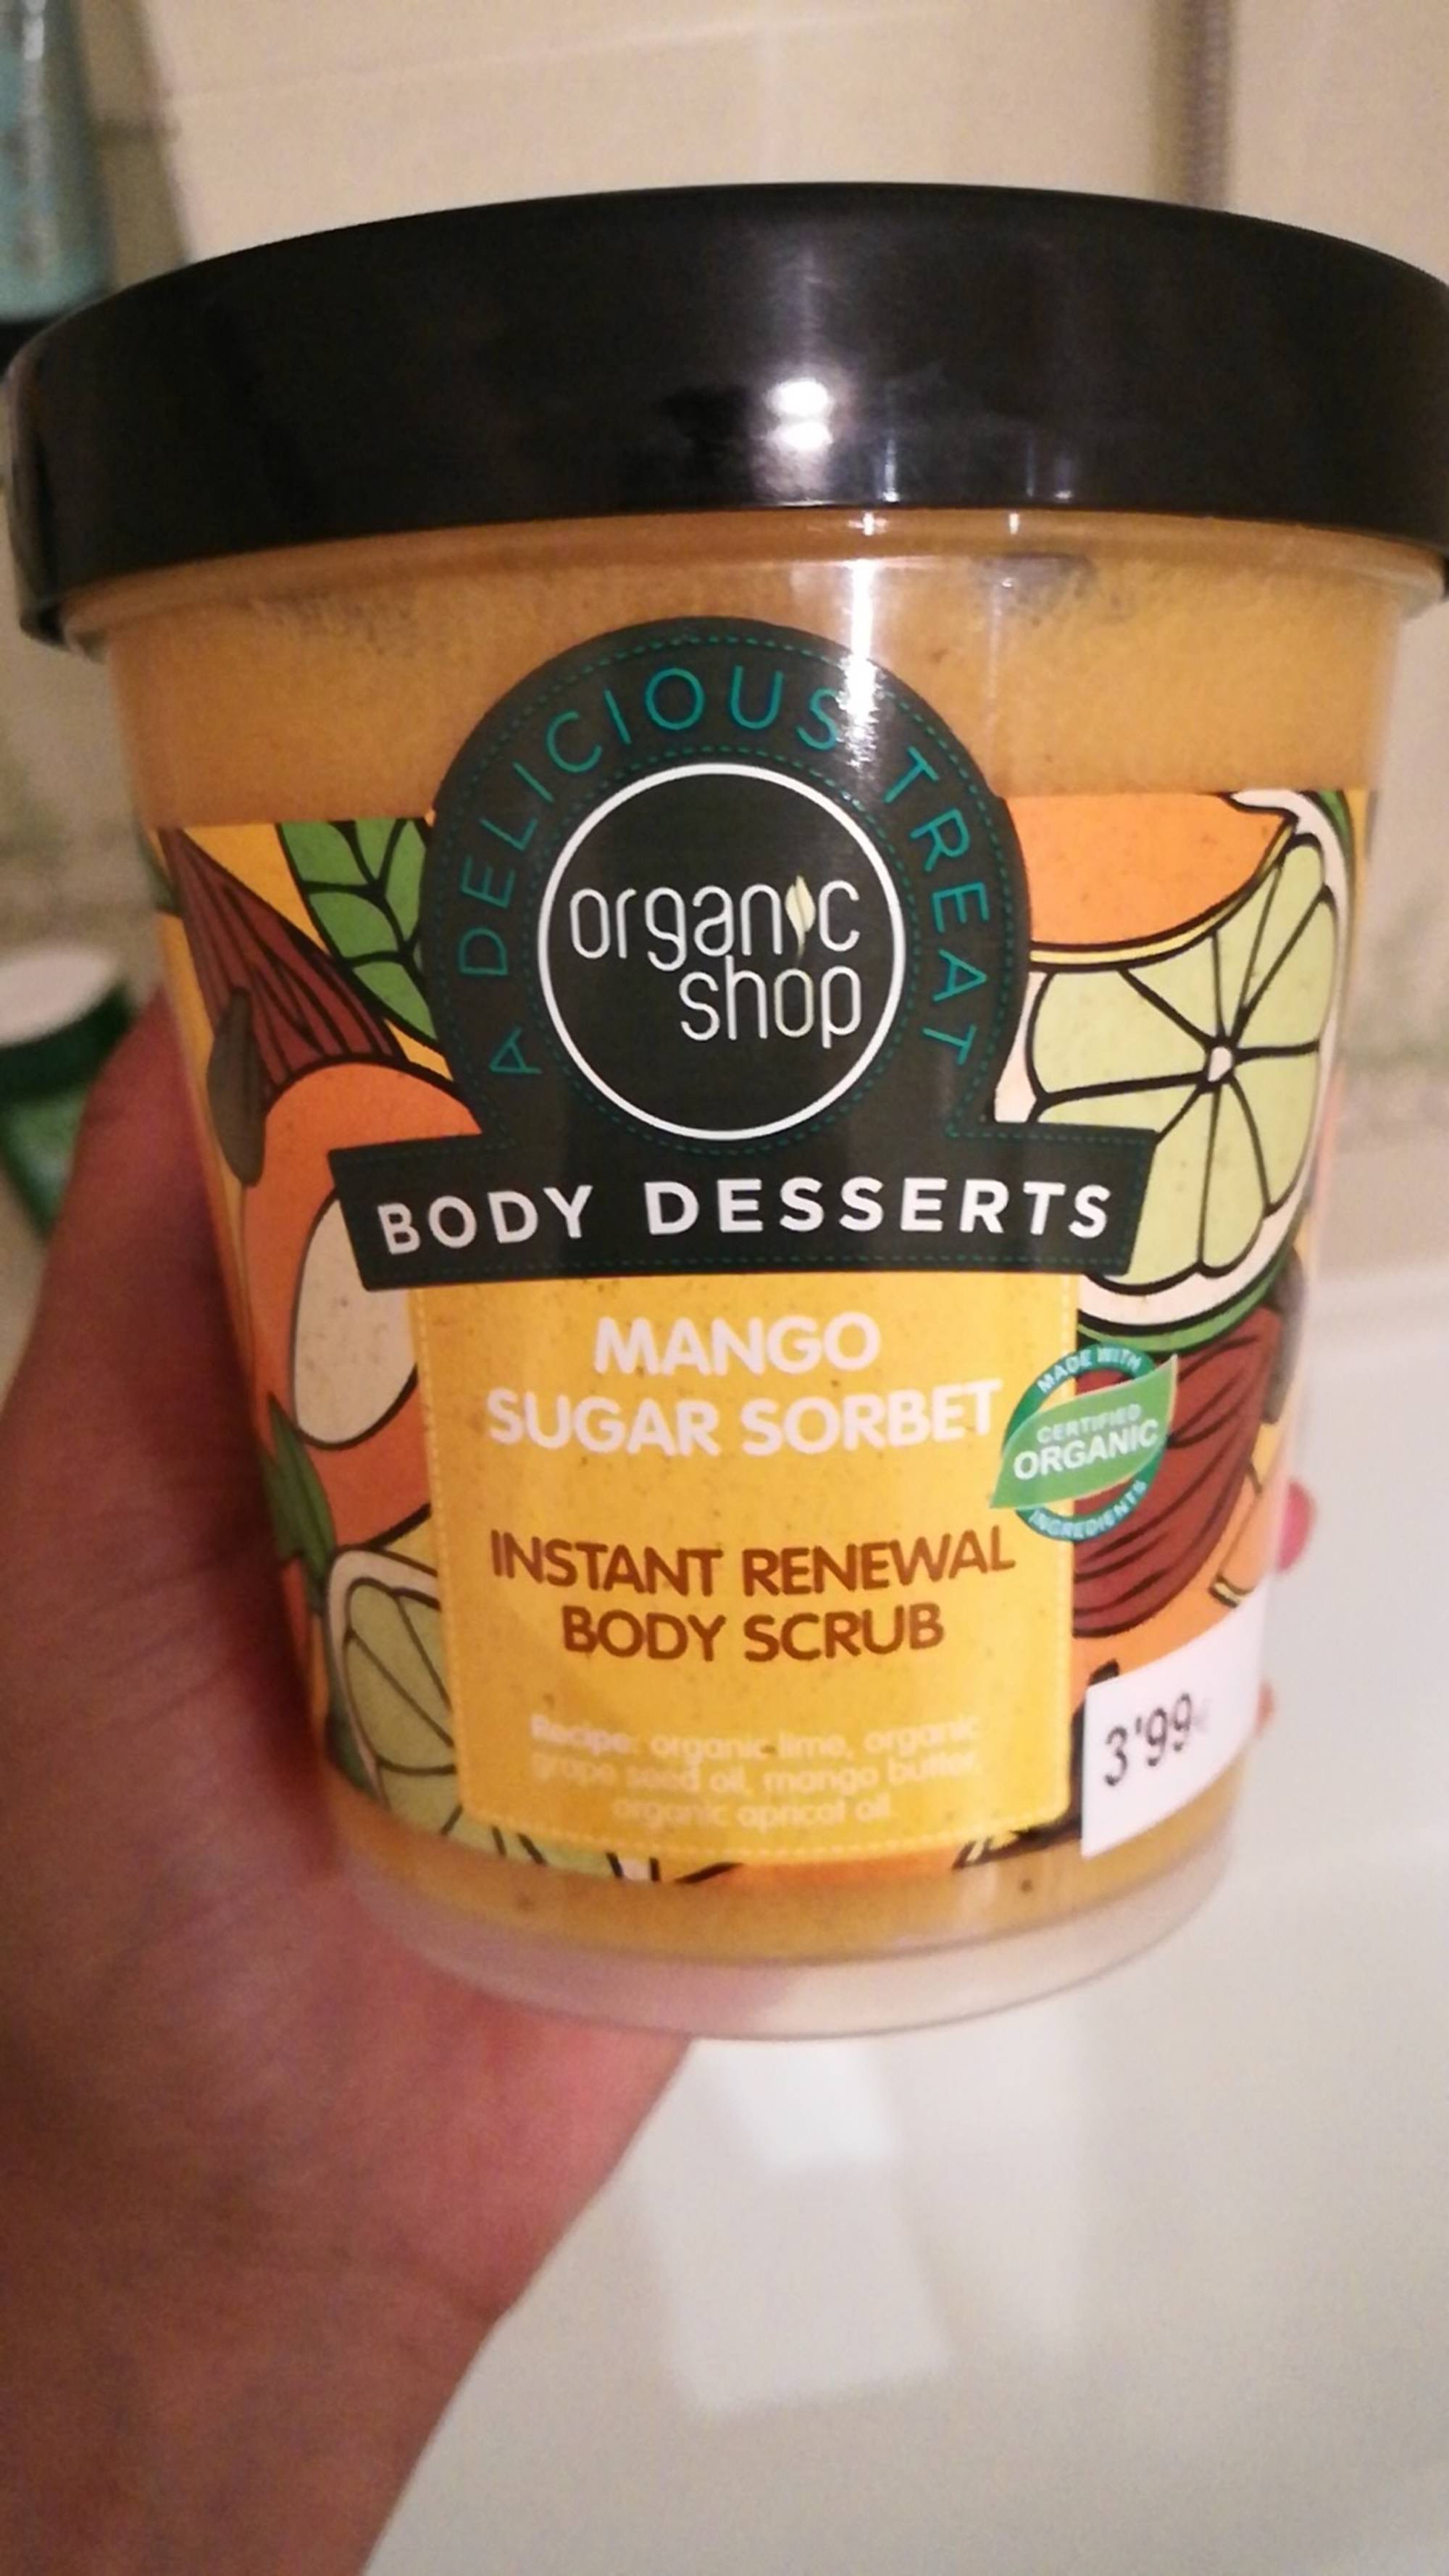 ORGANIC SHOP - Body desserts mango sugar sorbet - Body scrub